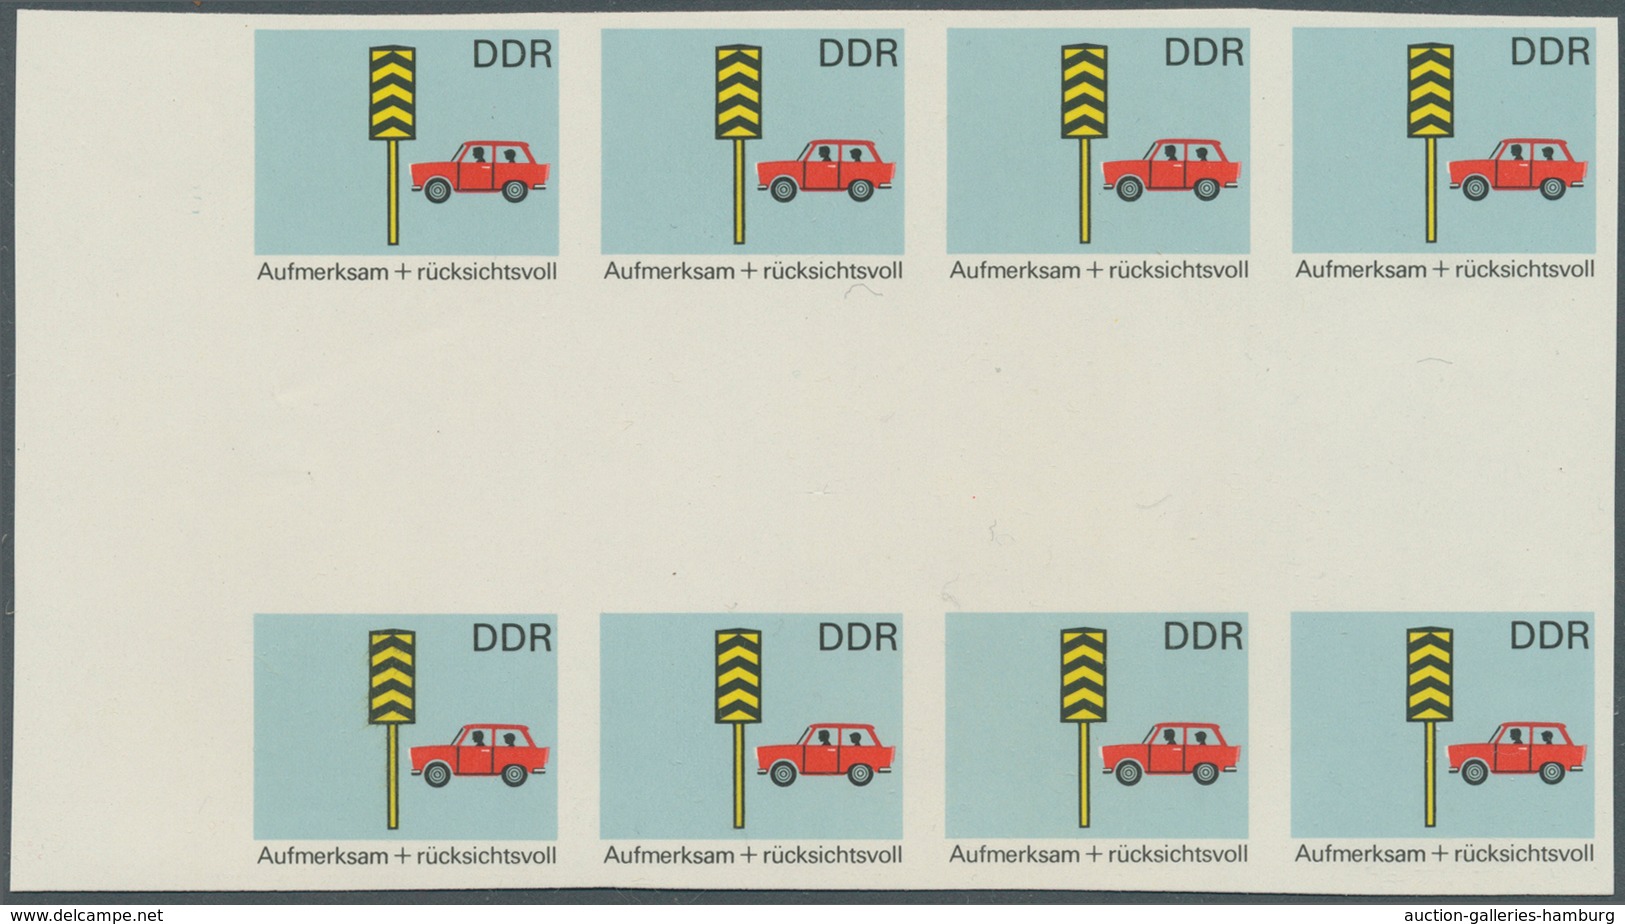 DDR: 1969, Sicherheit im Straßenverkehr 5 Pf. 'Rücksichtnahme auf Fußgänger' in 6 verschiedenen unge